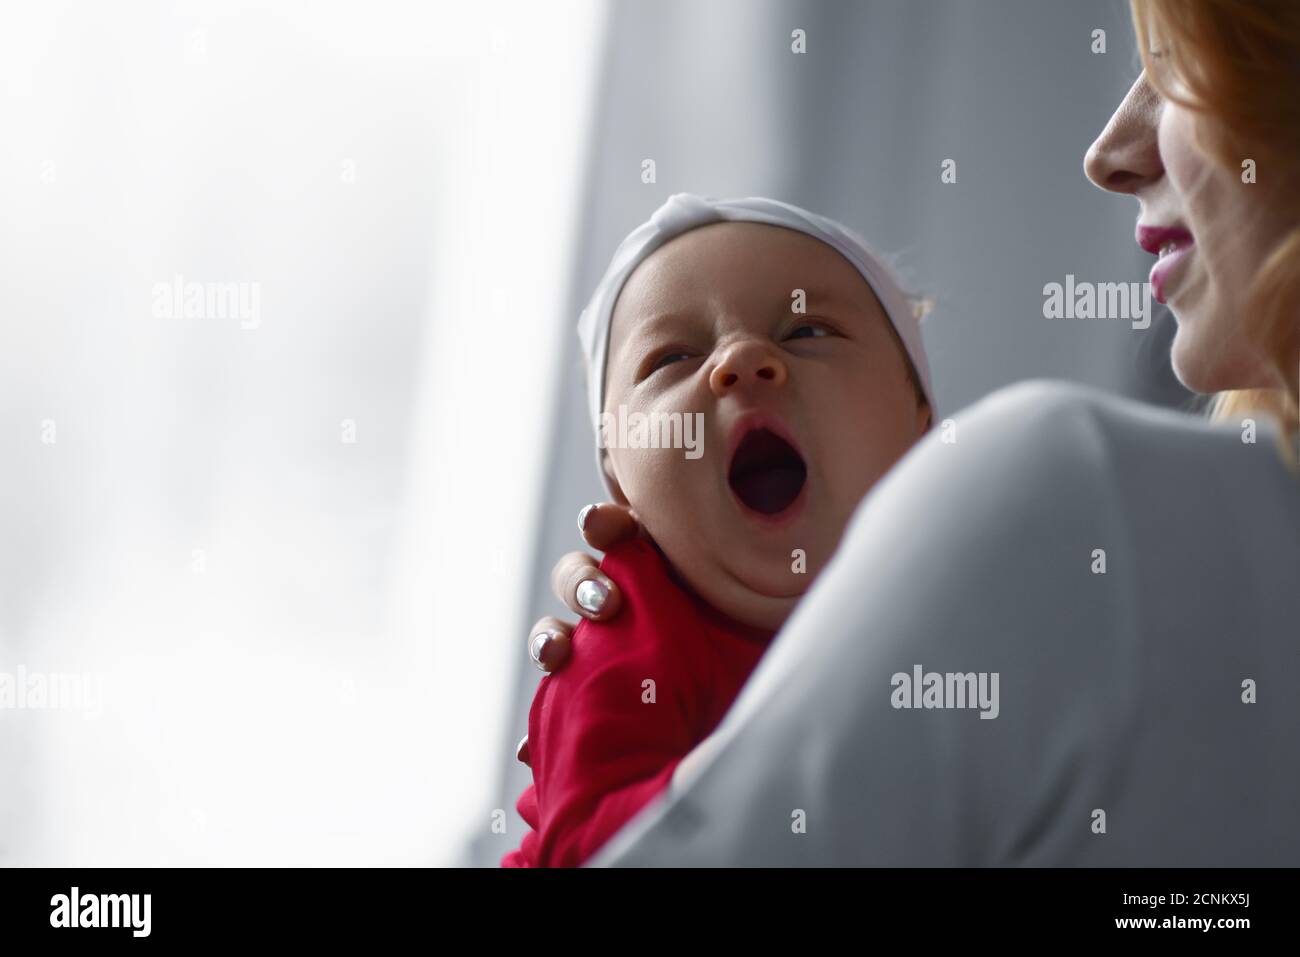 Madre sosteniendo a una linda niña recién nacida en sus brazos. Bostezo de bebé soñoliento. Foto de stock